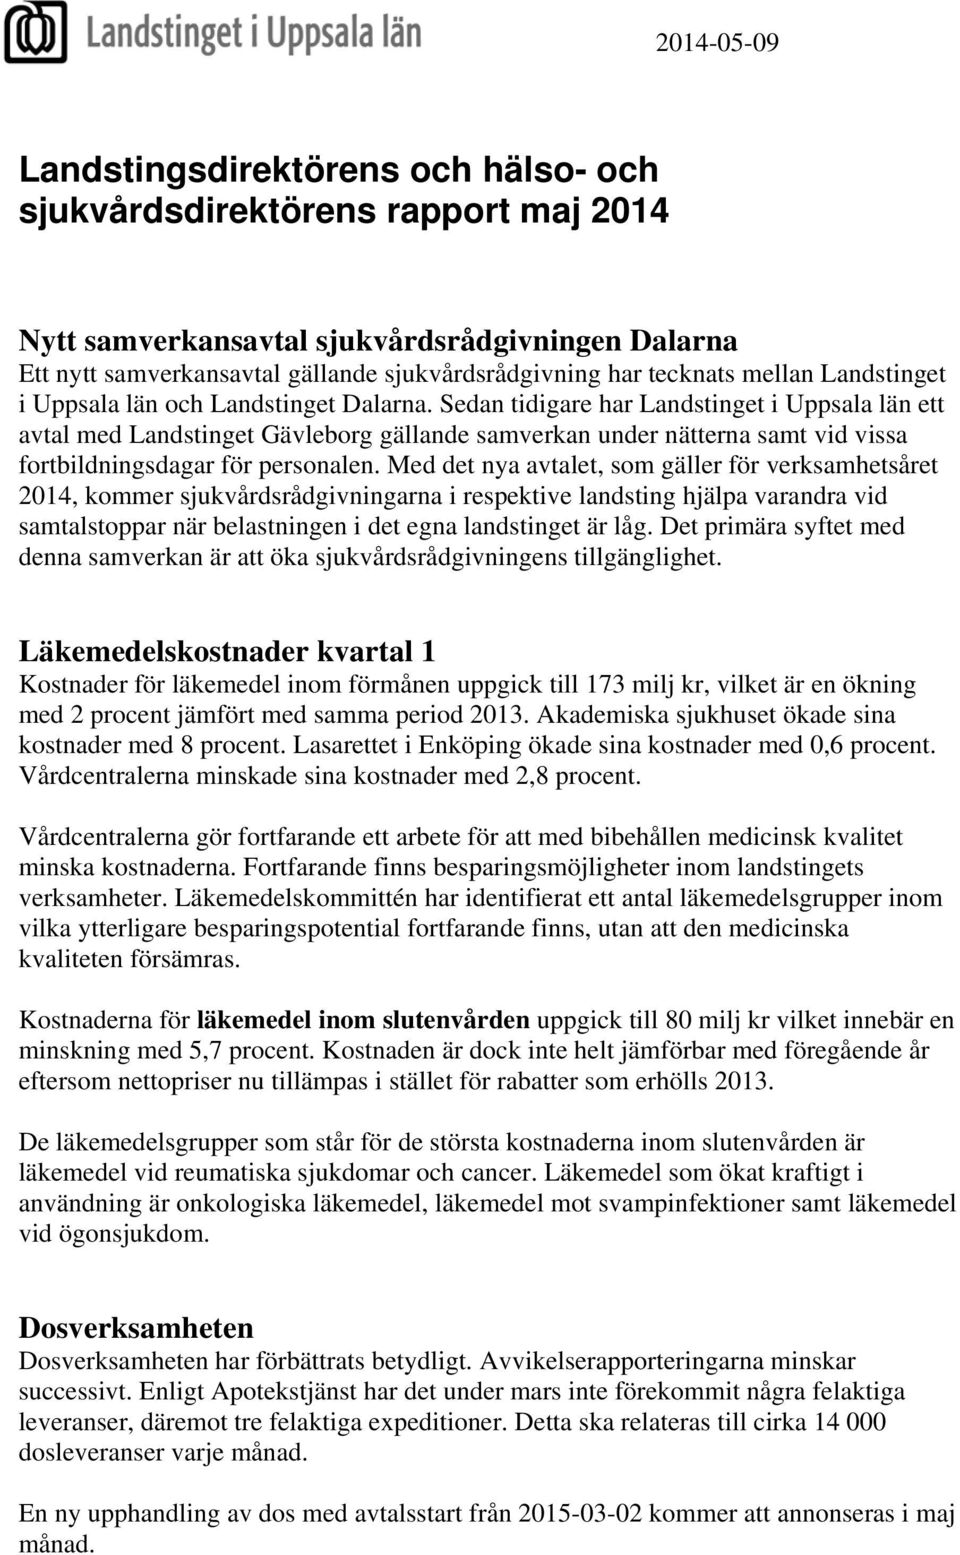 Sedan tidigare har Landstinget i Uppsala län ett avtal med Landstinget Gävleborg gällande samverkan under nätterna samt vid vissa fortbildningsdagar för personalen.